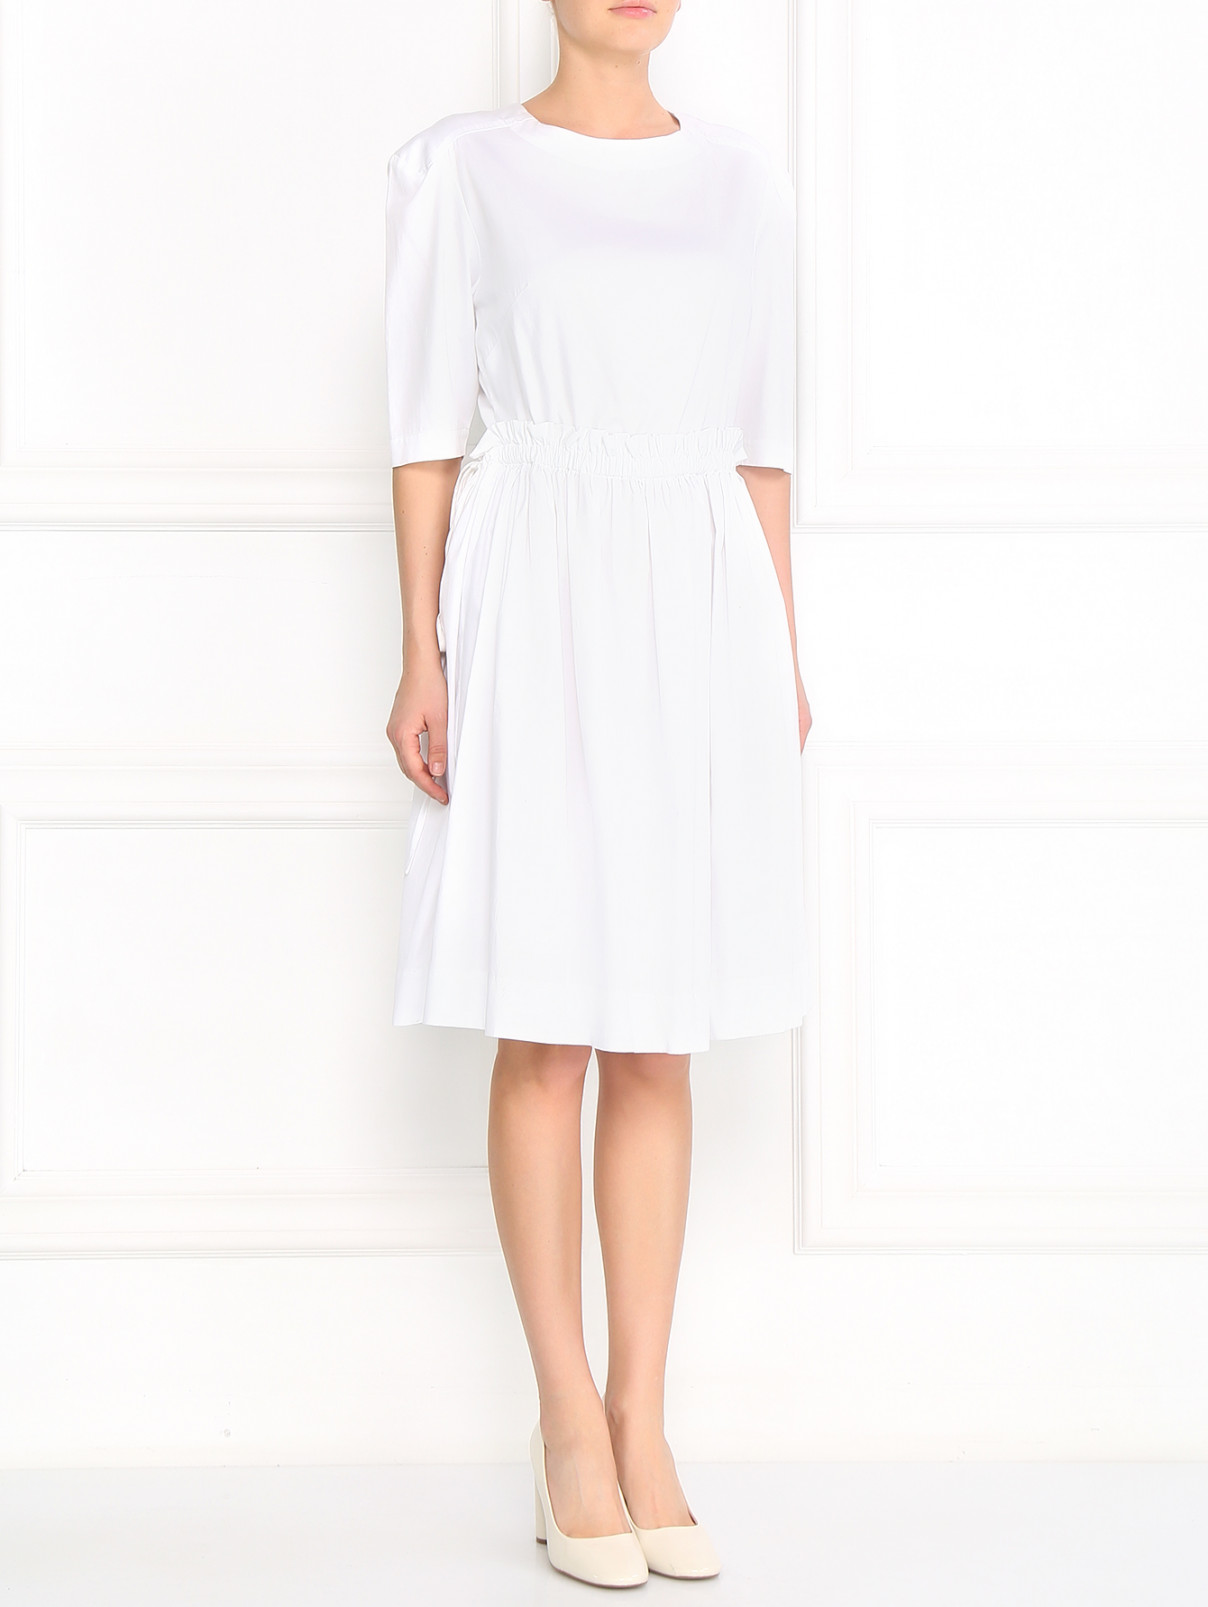 Платье из хлопка с вырезом на спине Anglomania by V.Westwood  –  Модель Общий вид  – Цвет:  Белый